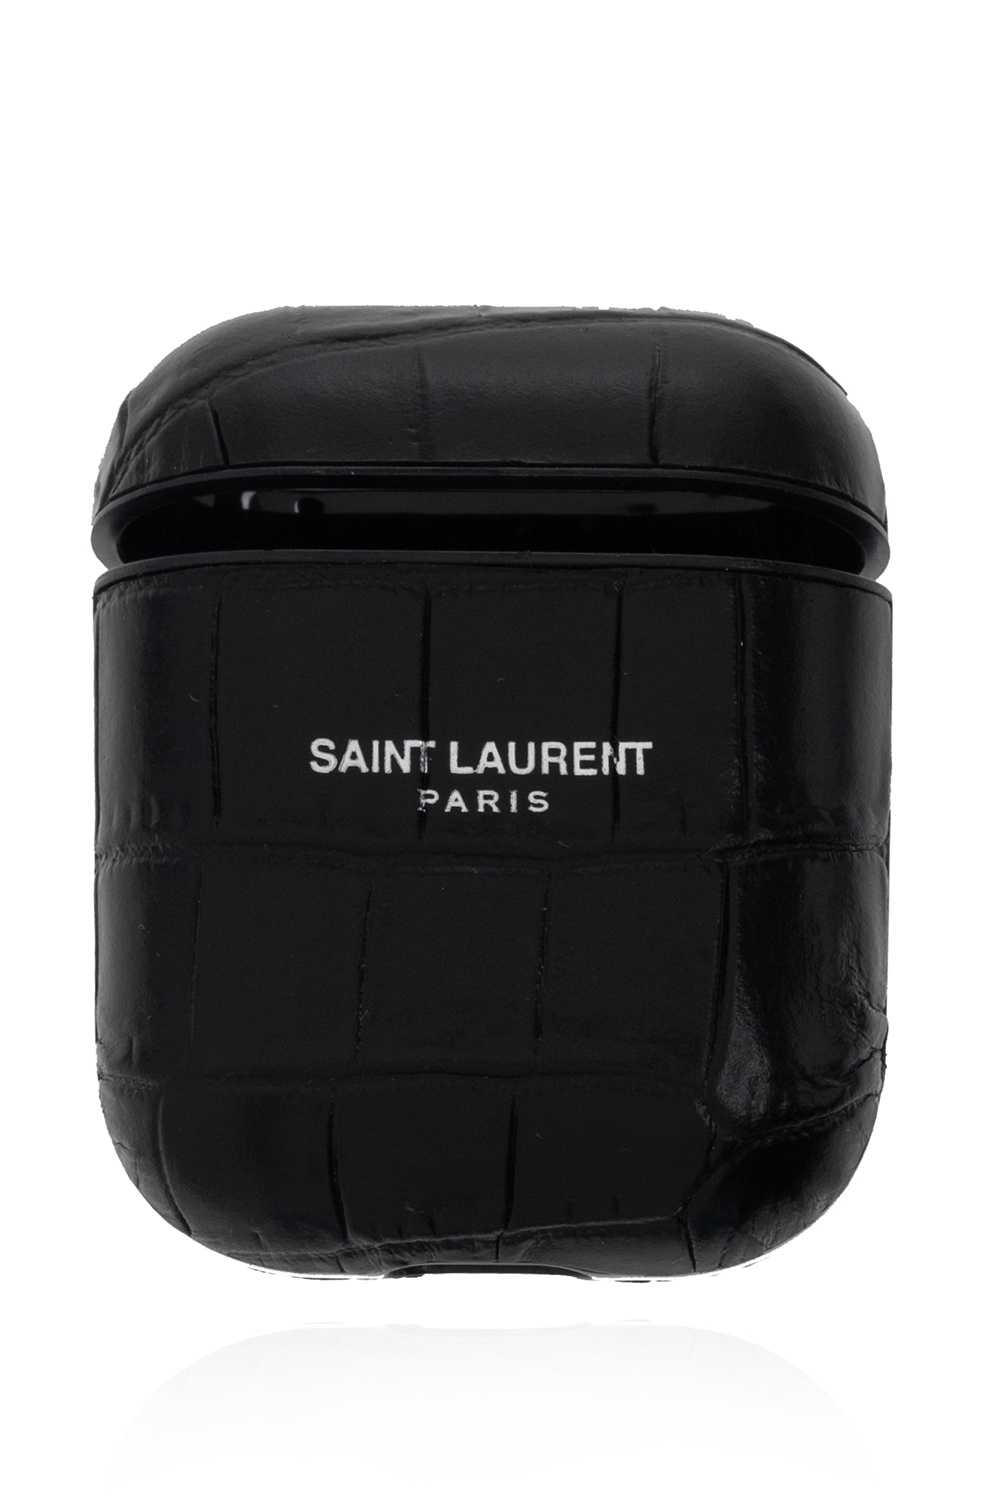 Saint Laurent Leather earphones case